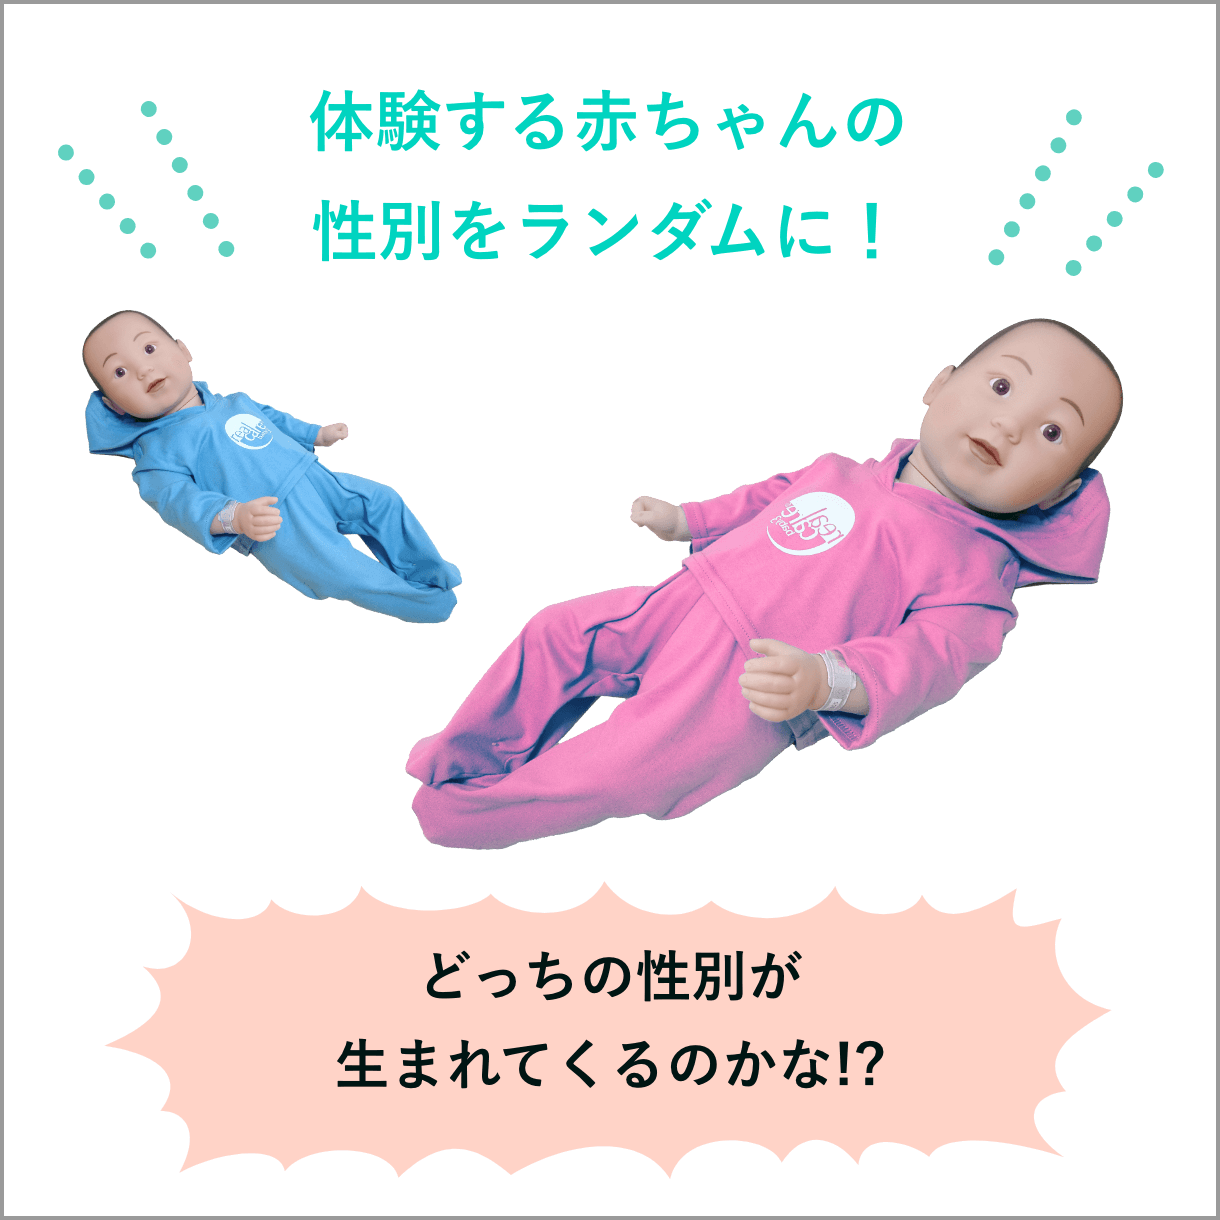 女の子の赤ちゃんを追加した場合の画像